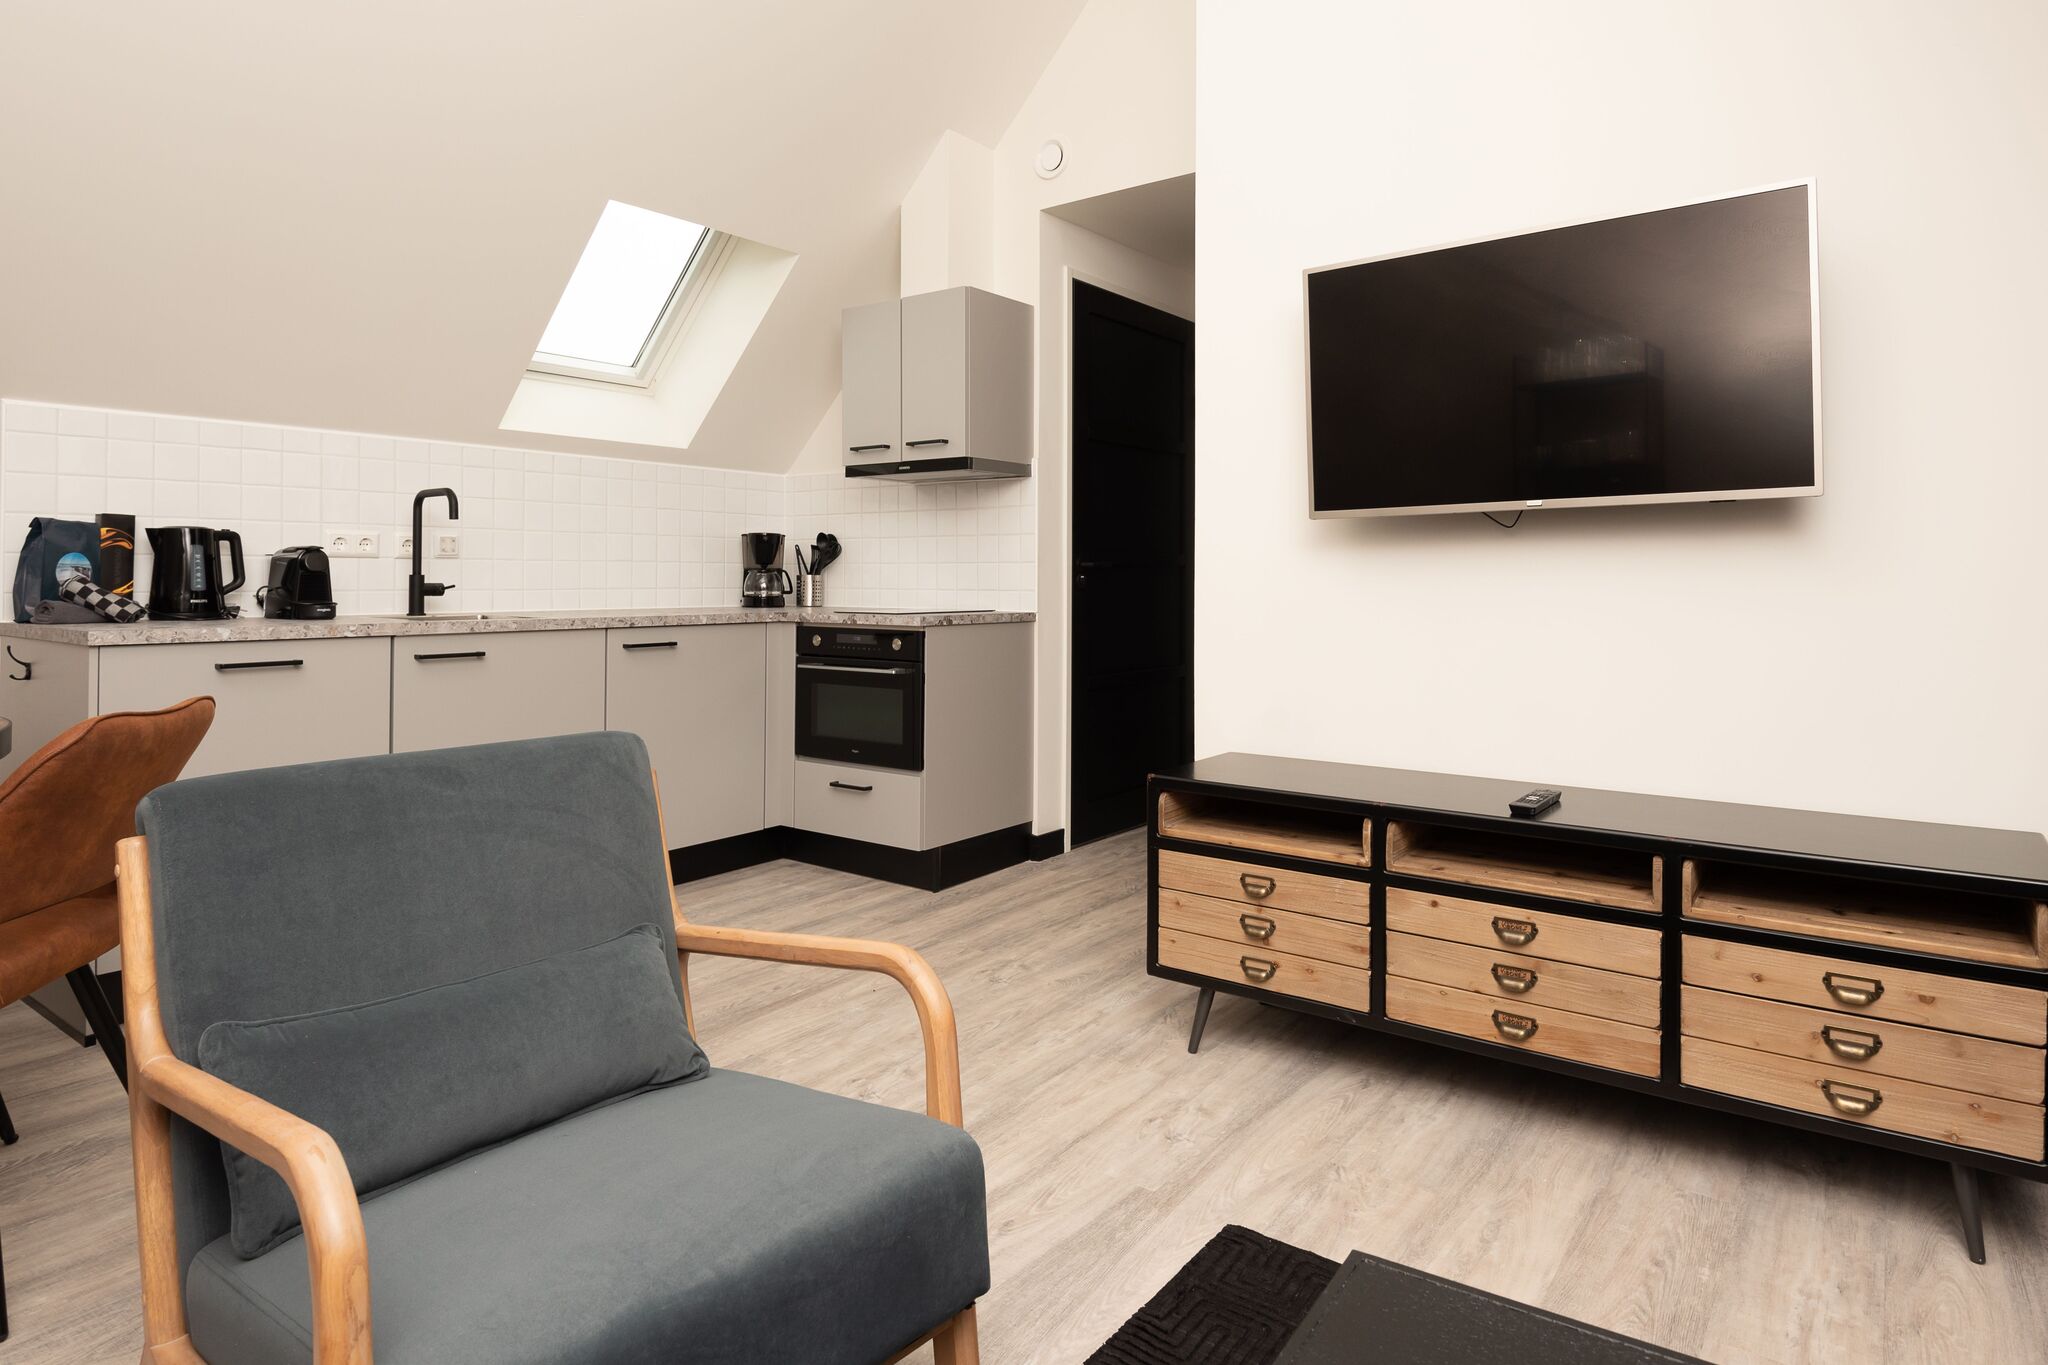 Luxe appartement in het centrum van Renesse 4 pax met infrarood sauna